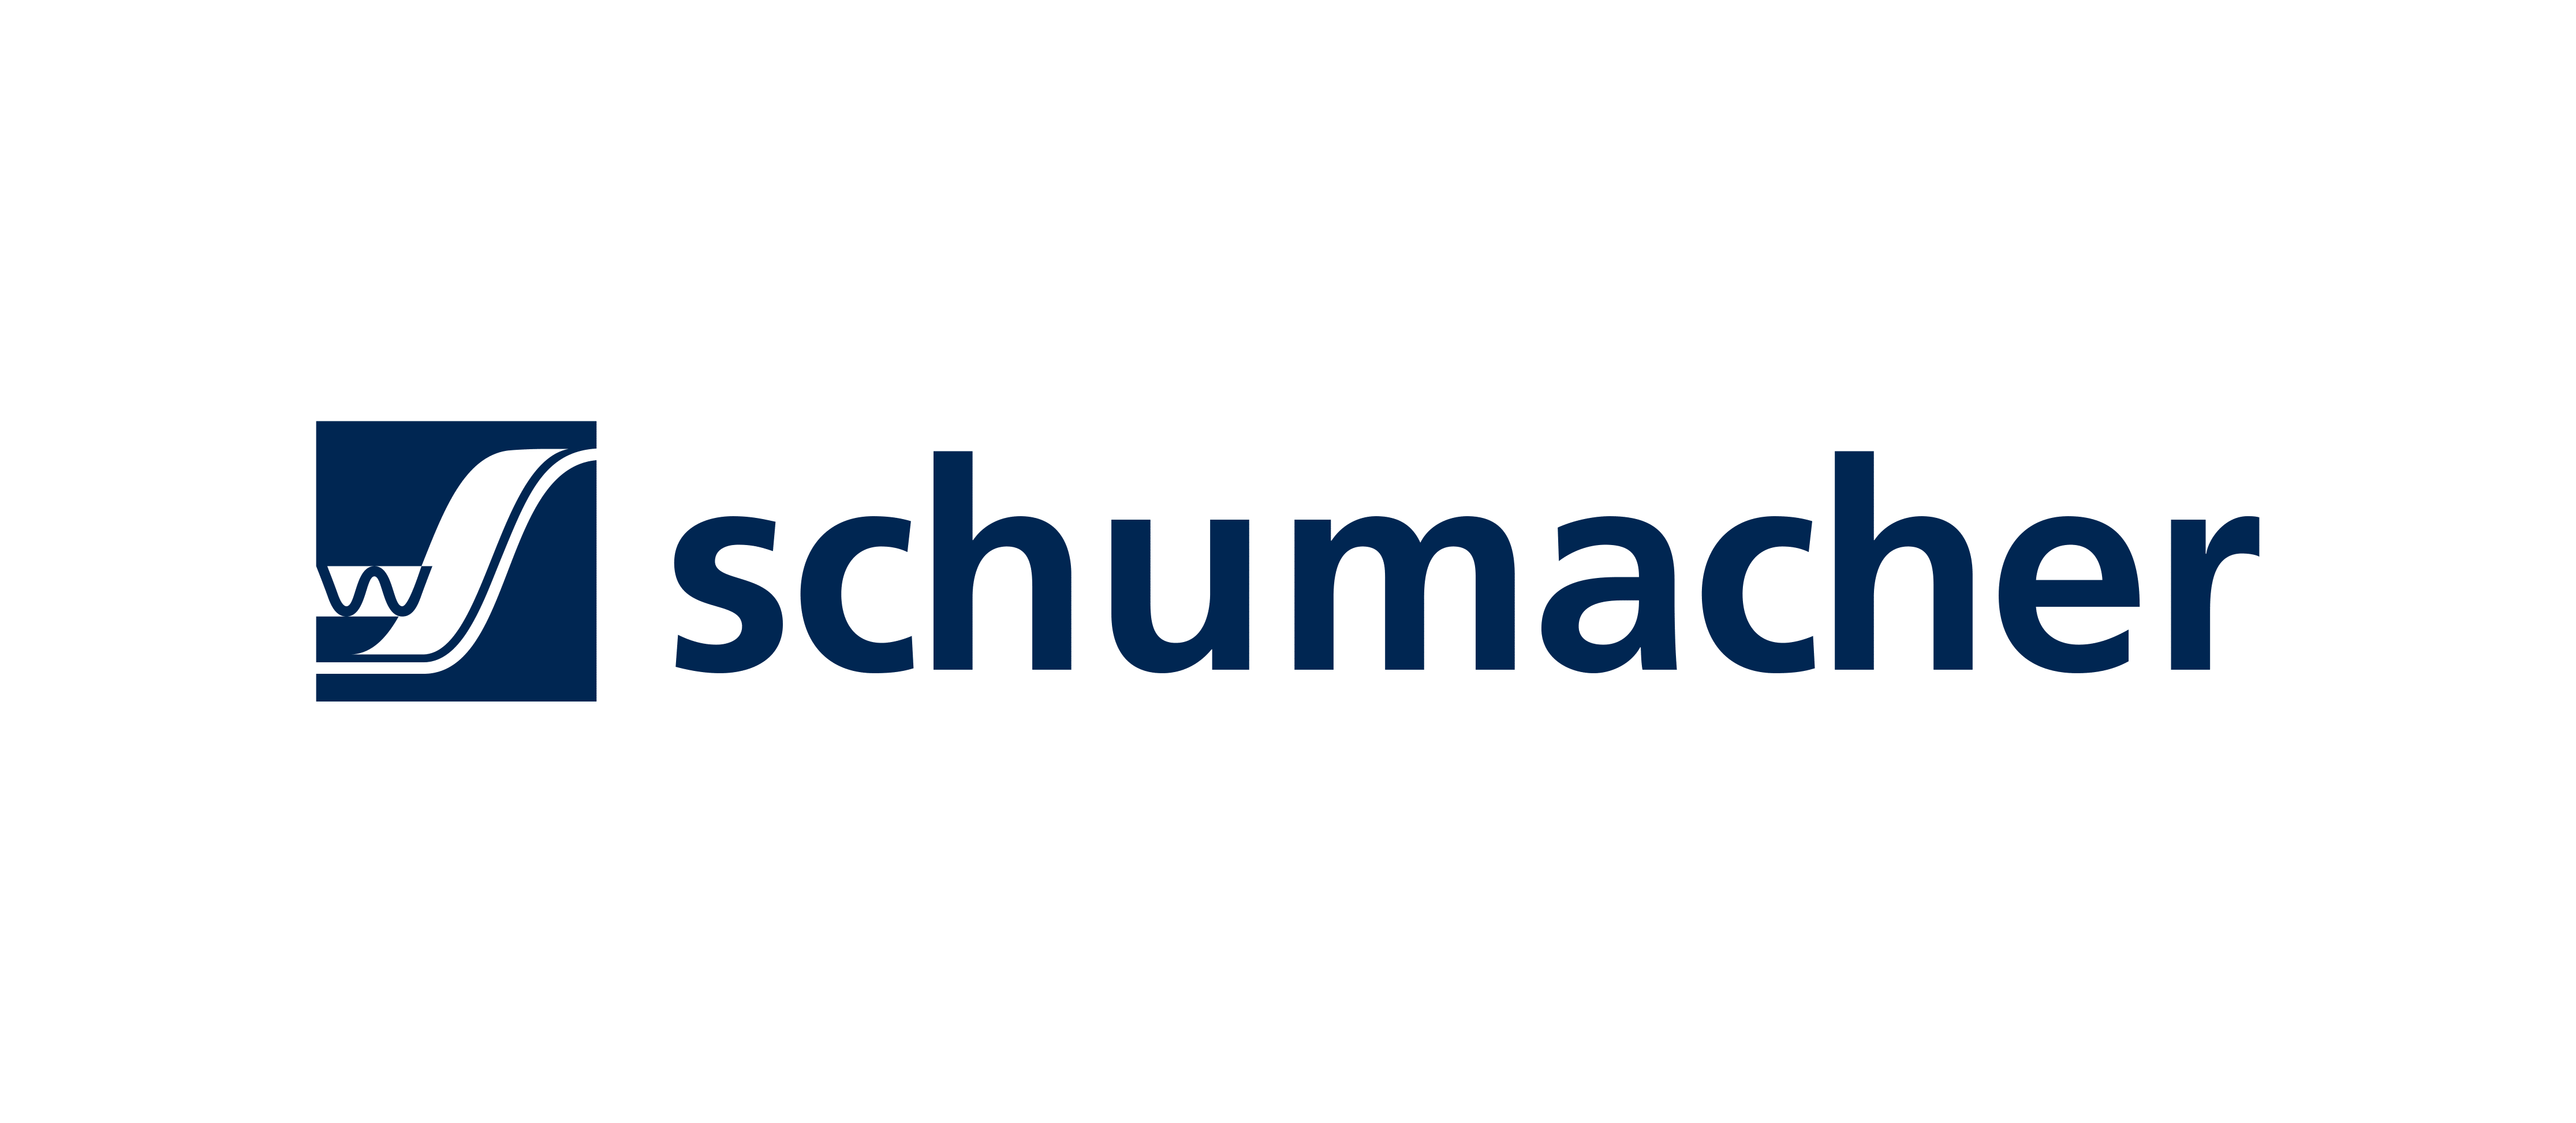 Schumacher - Packaging